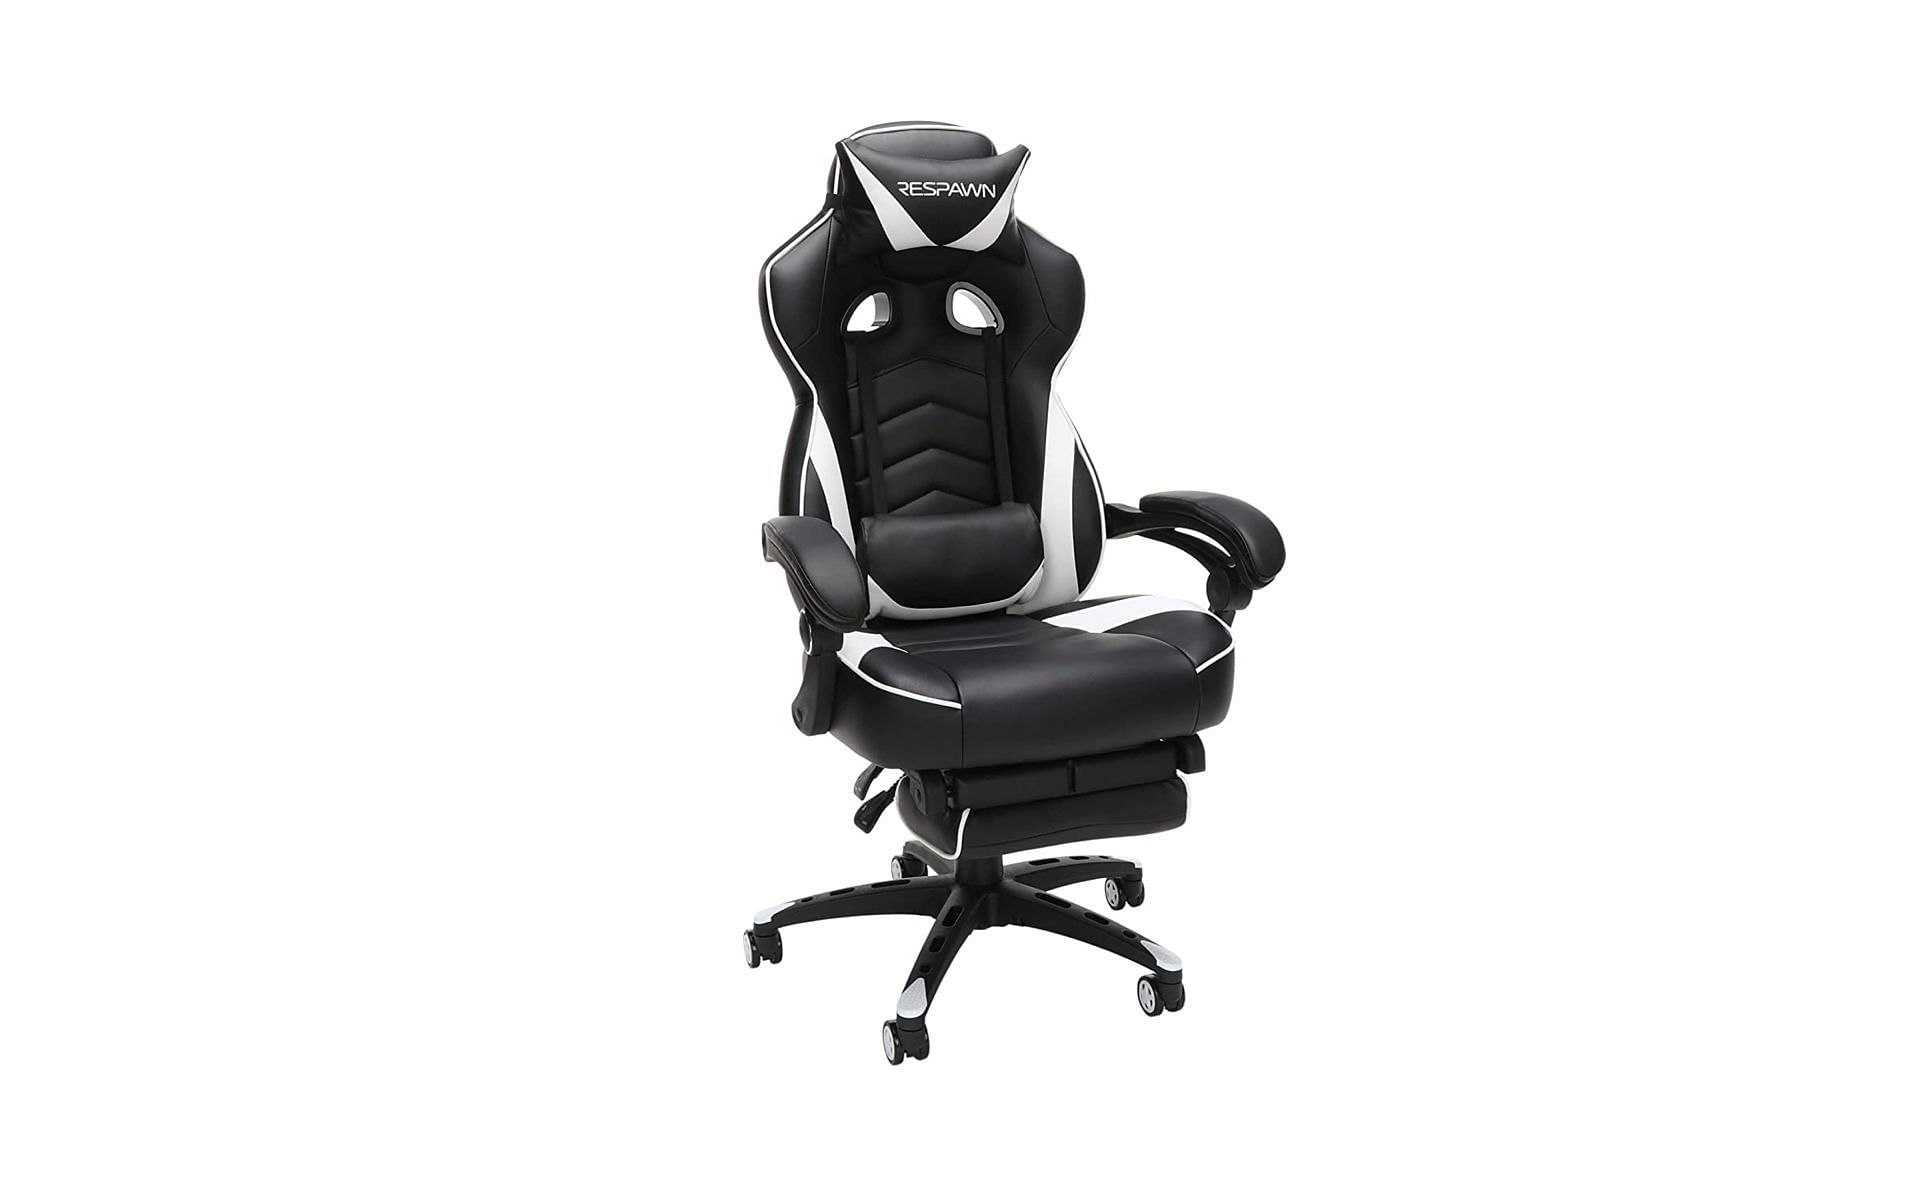 RESPAWN 110 Racing Style chair (Image via Amazon)